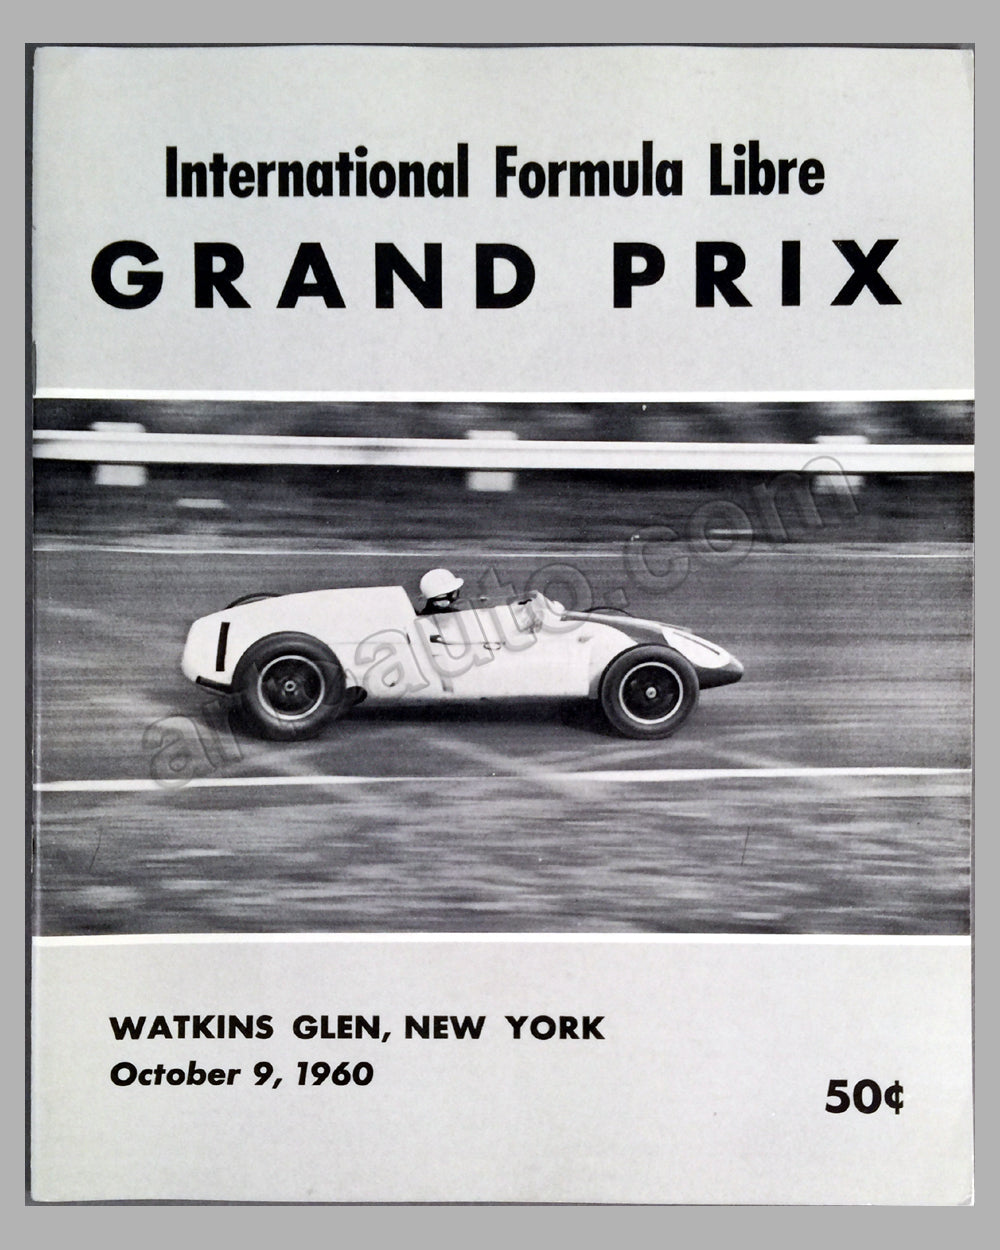 International Formula Libre Grand Prix at Watkins Glen Oct. 9, 1960